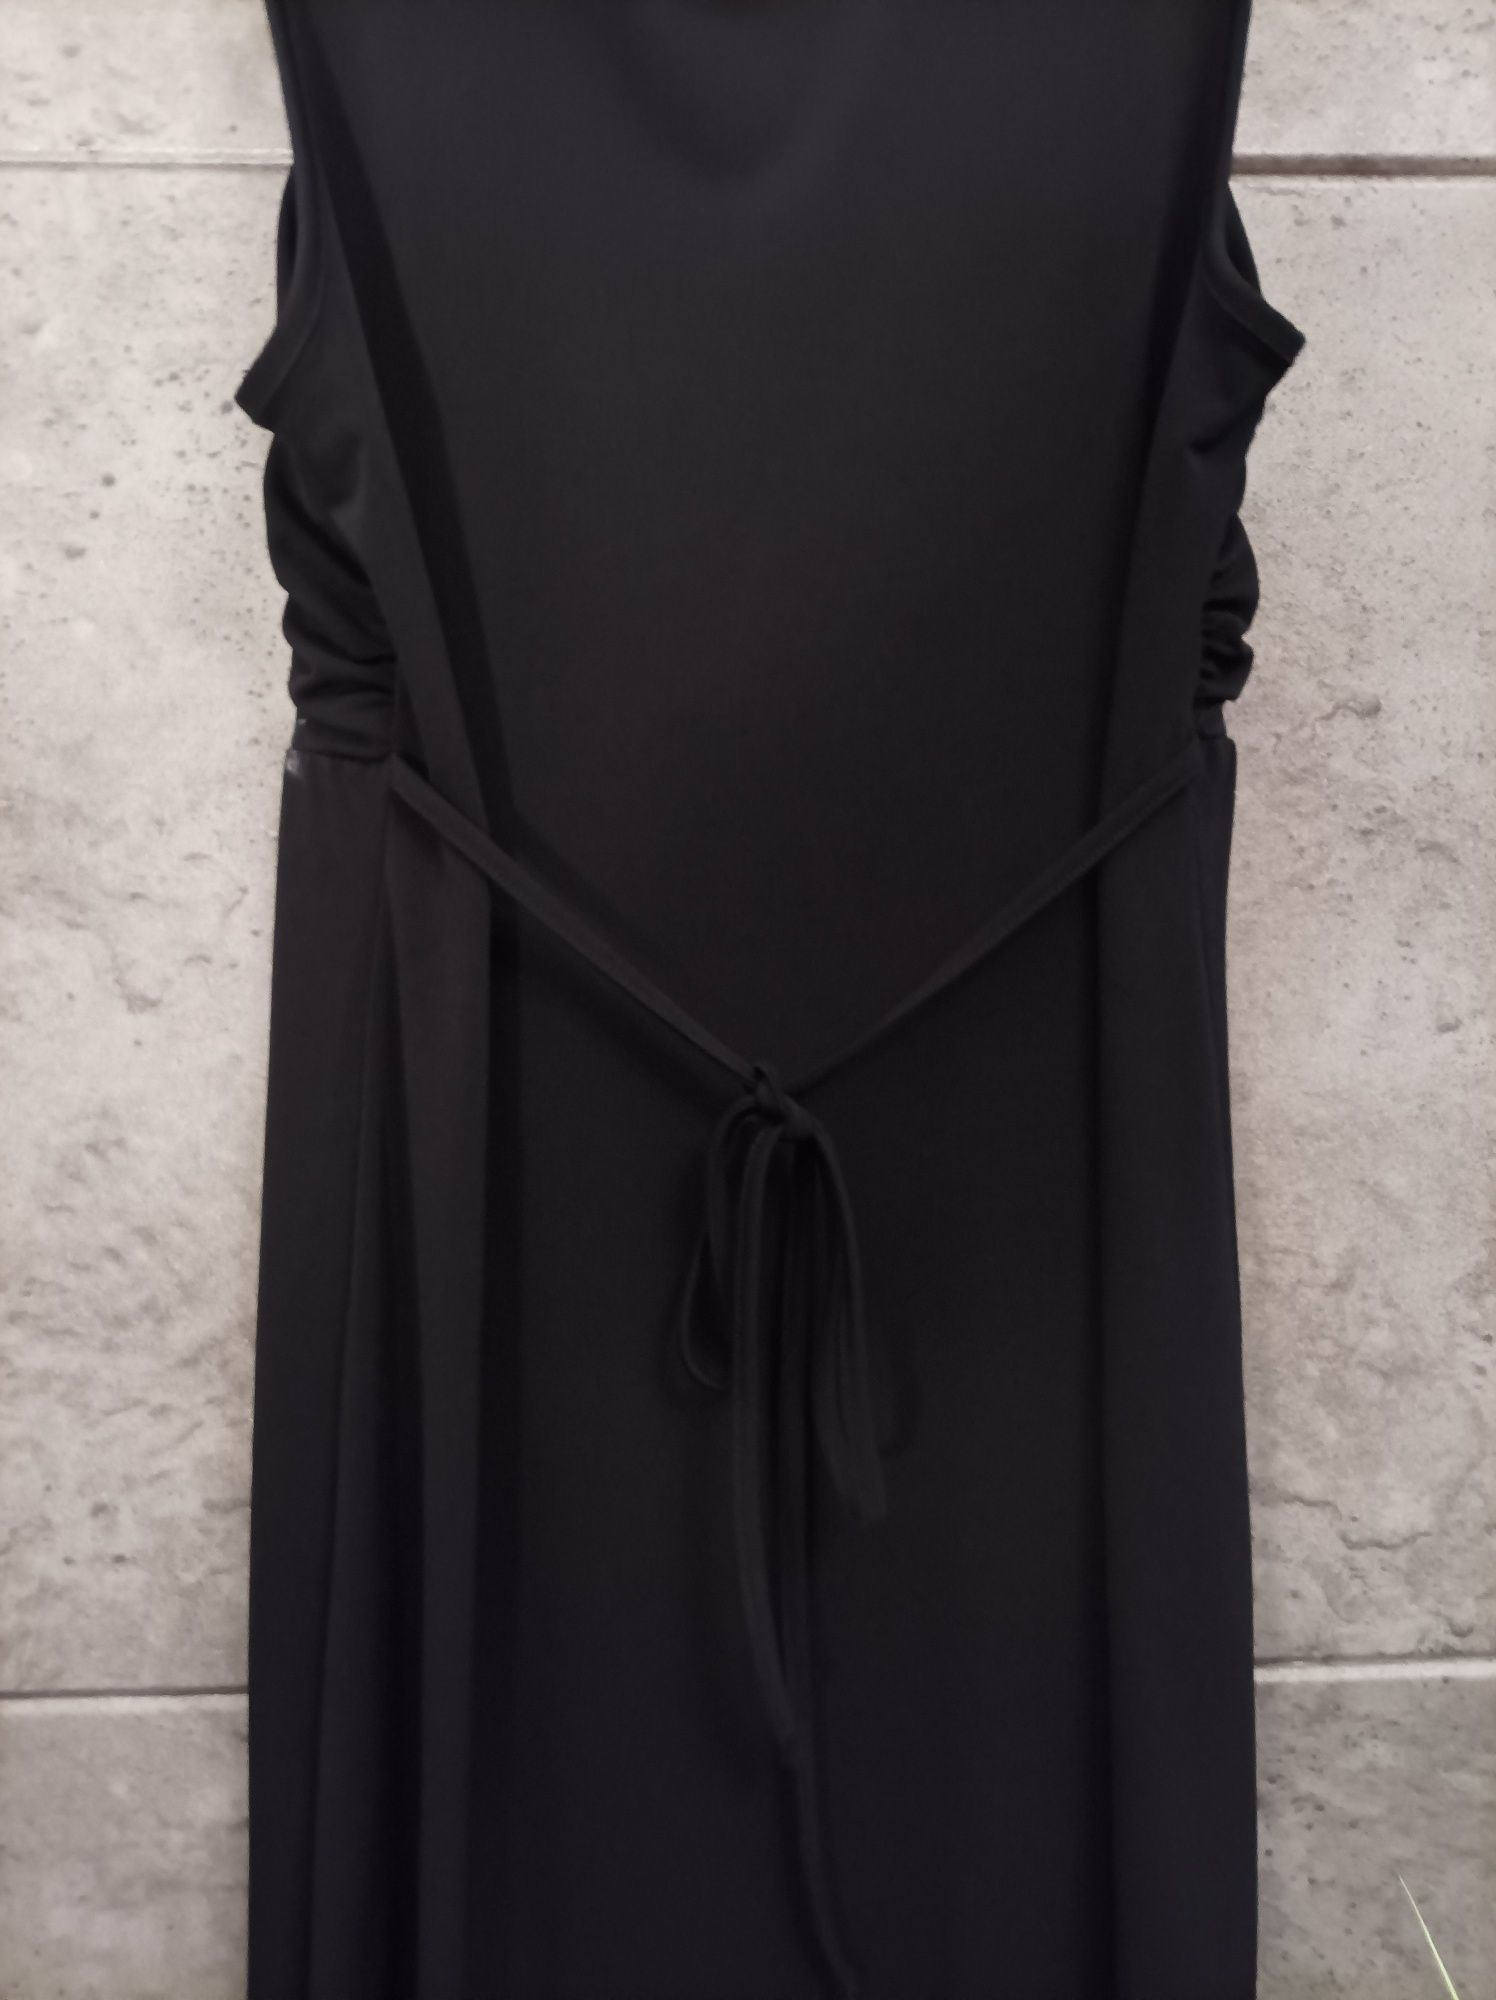 Śliczna czarna sukienka. Gothic, gotycka,